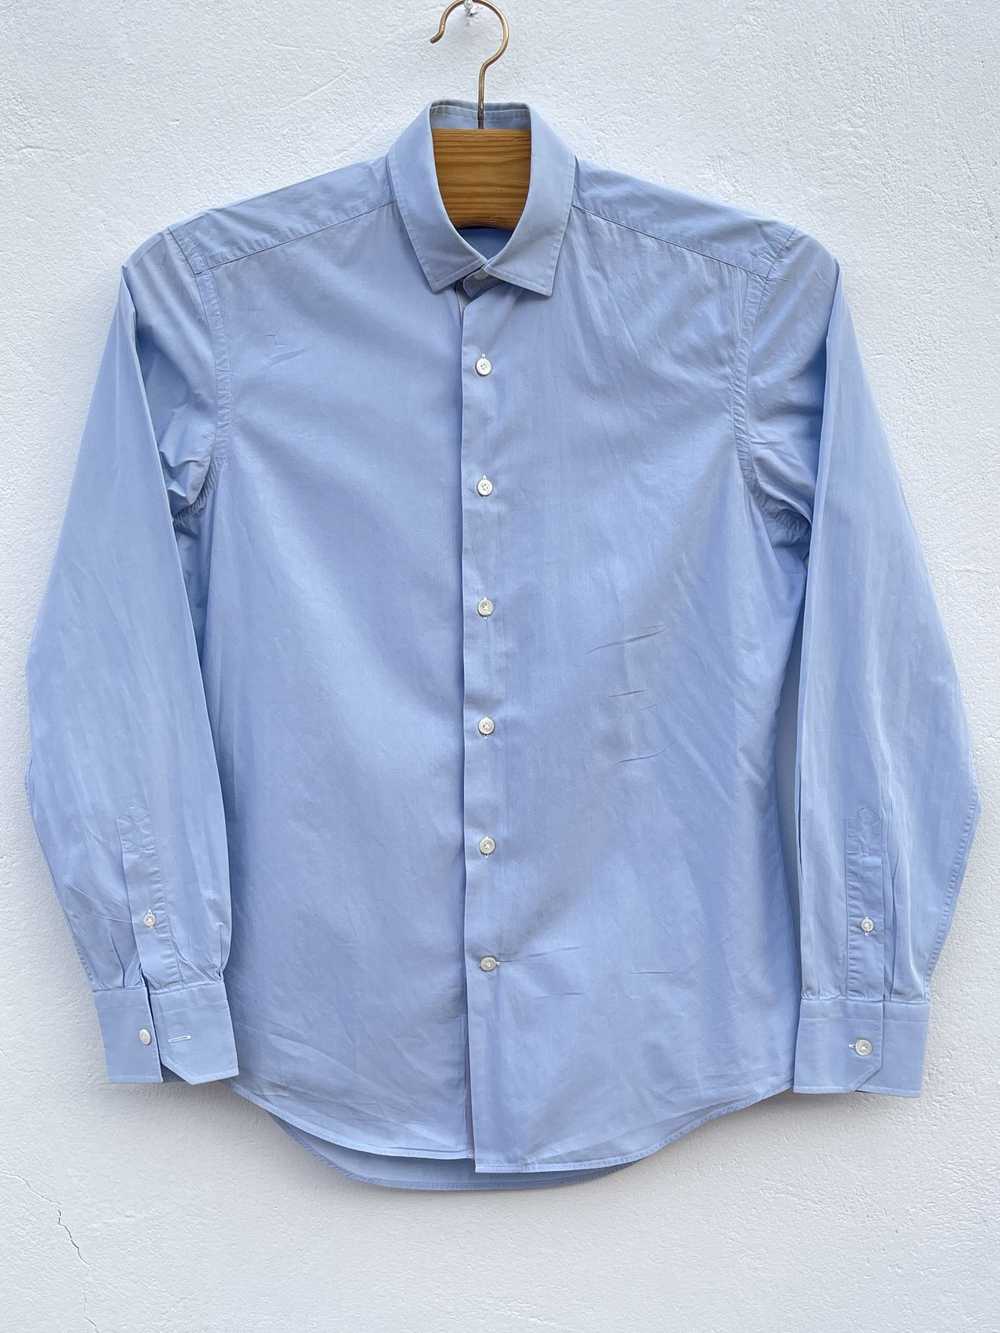 Lanvin 🔥 Lanvin Paris luxury shirt size Small co… - image 1